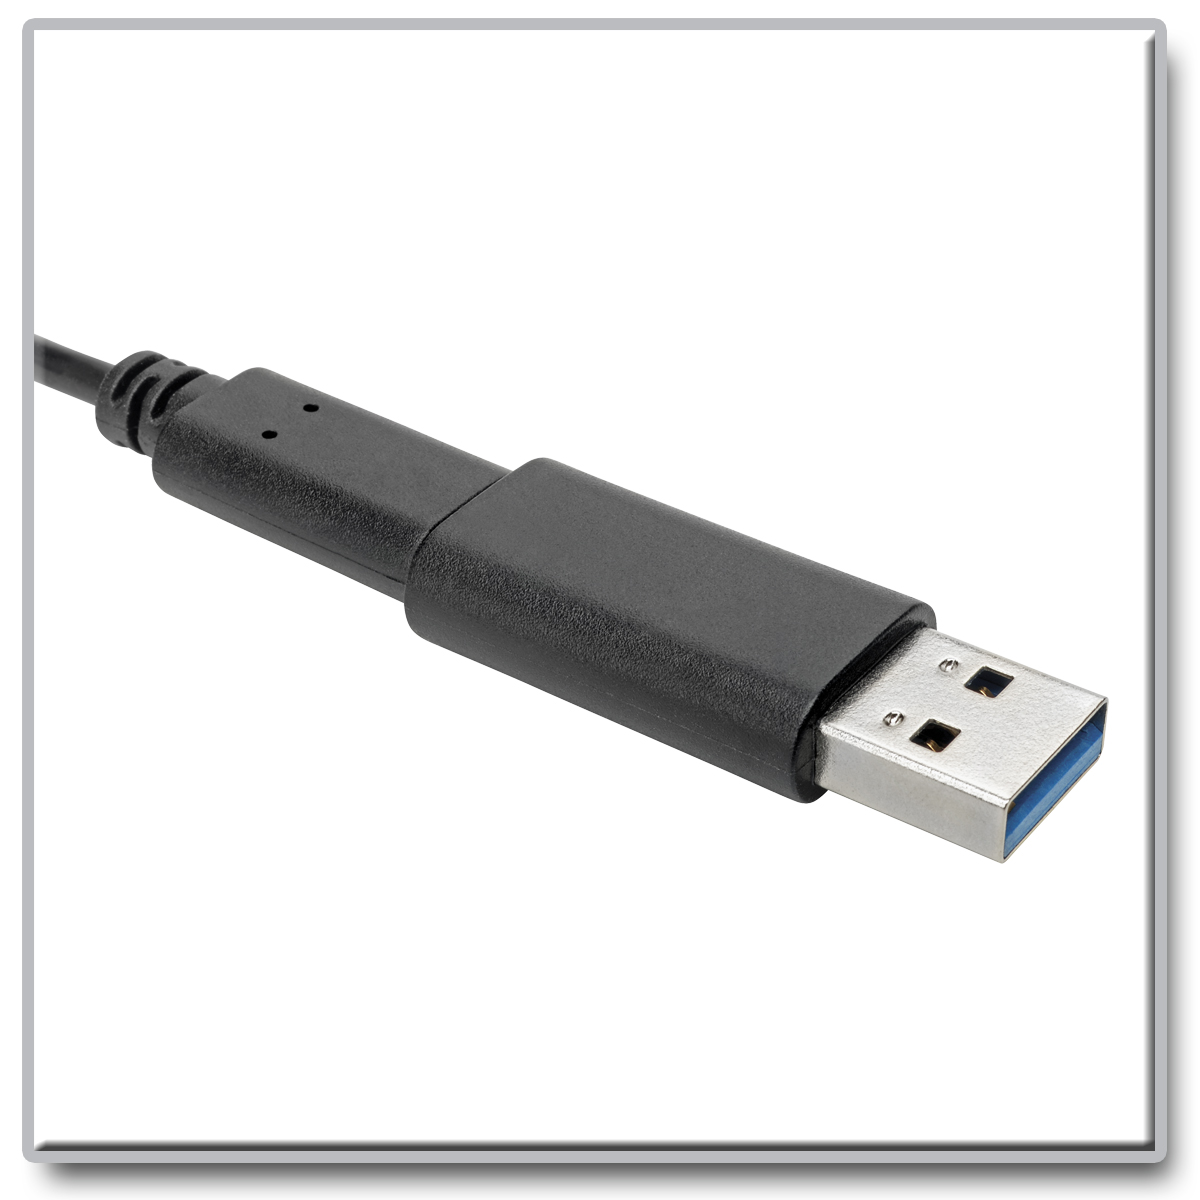 Dell adaptateur USB-C vers USB-A 3.0